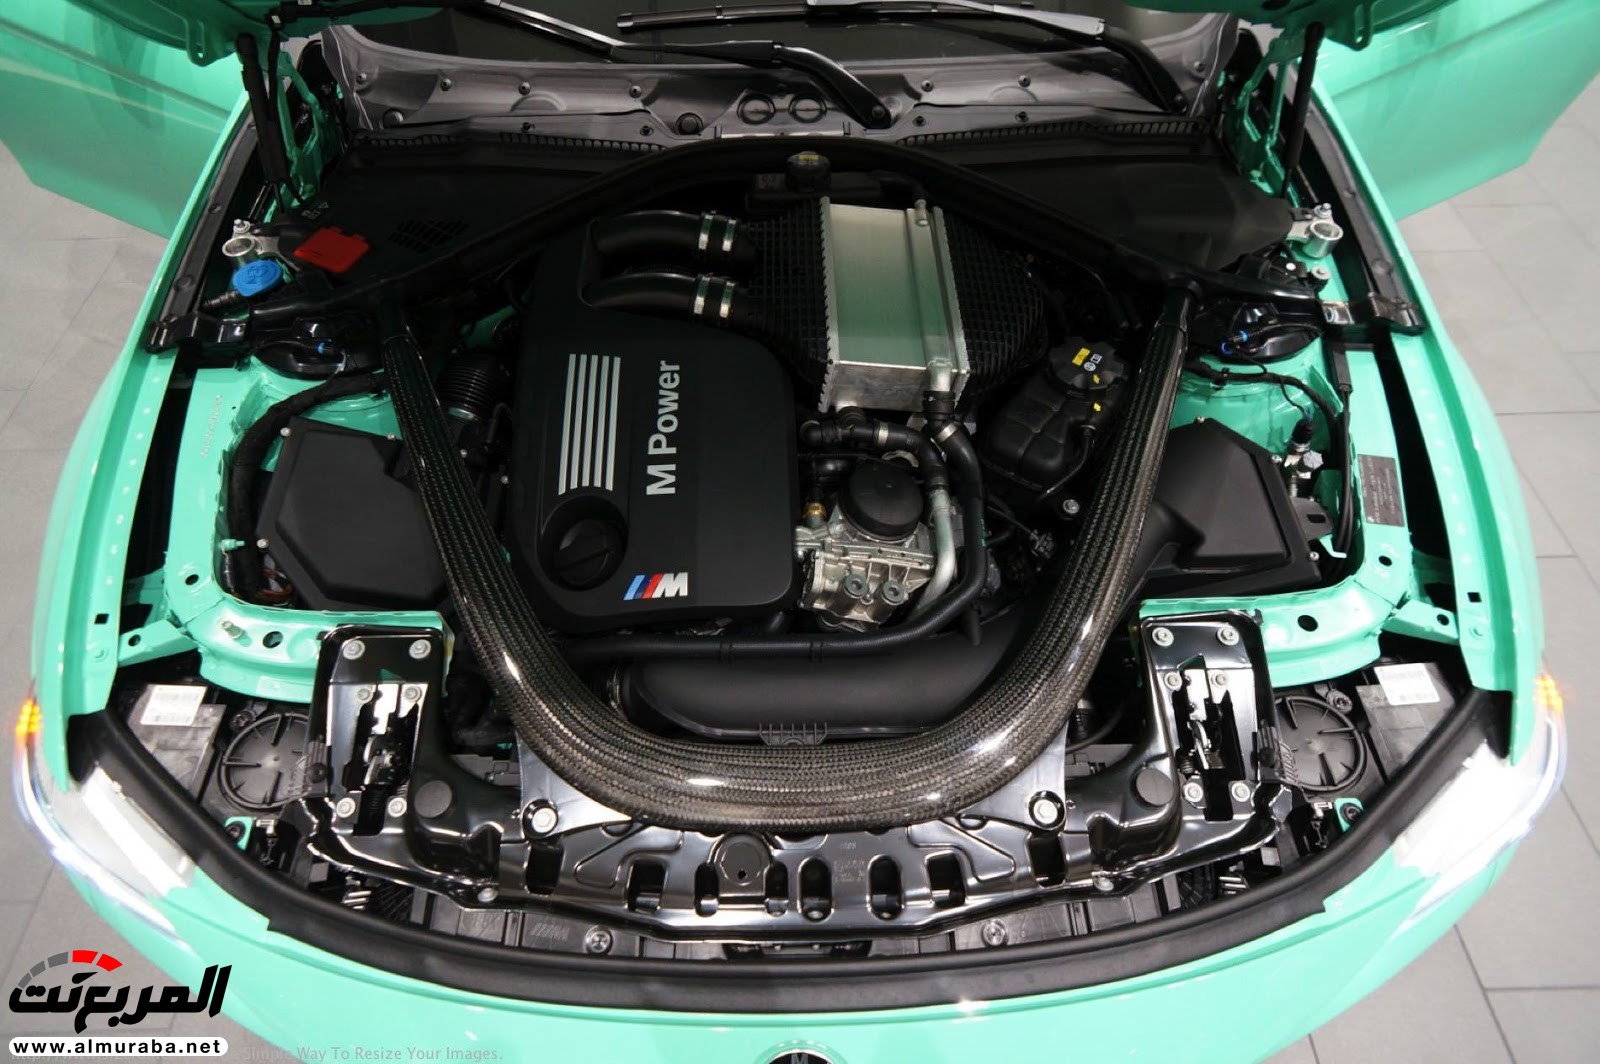 "بالصور" شاهد "بي إم دبليو" F80 M3 الخاصة بطلاء النعناع الأخضر BMW 118